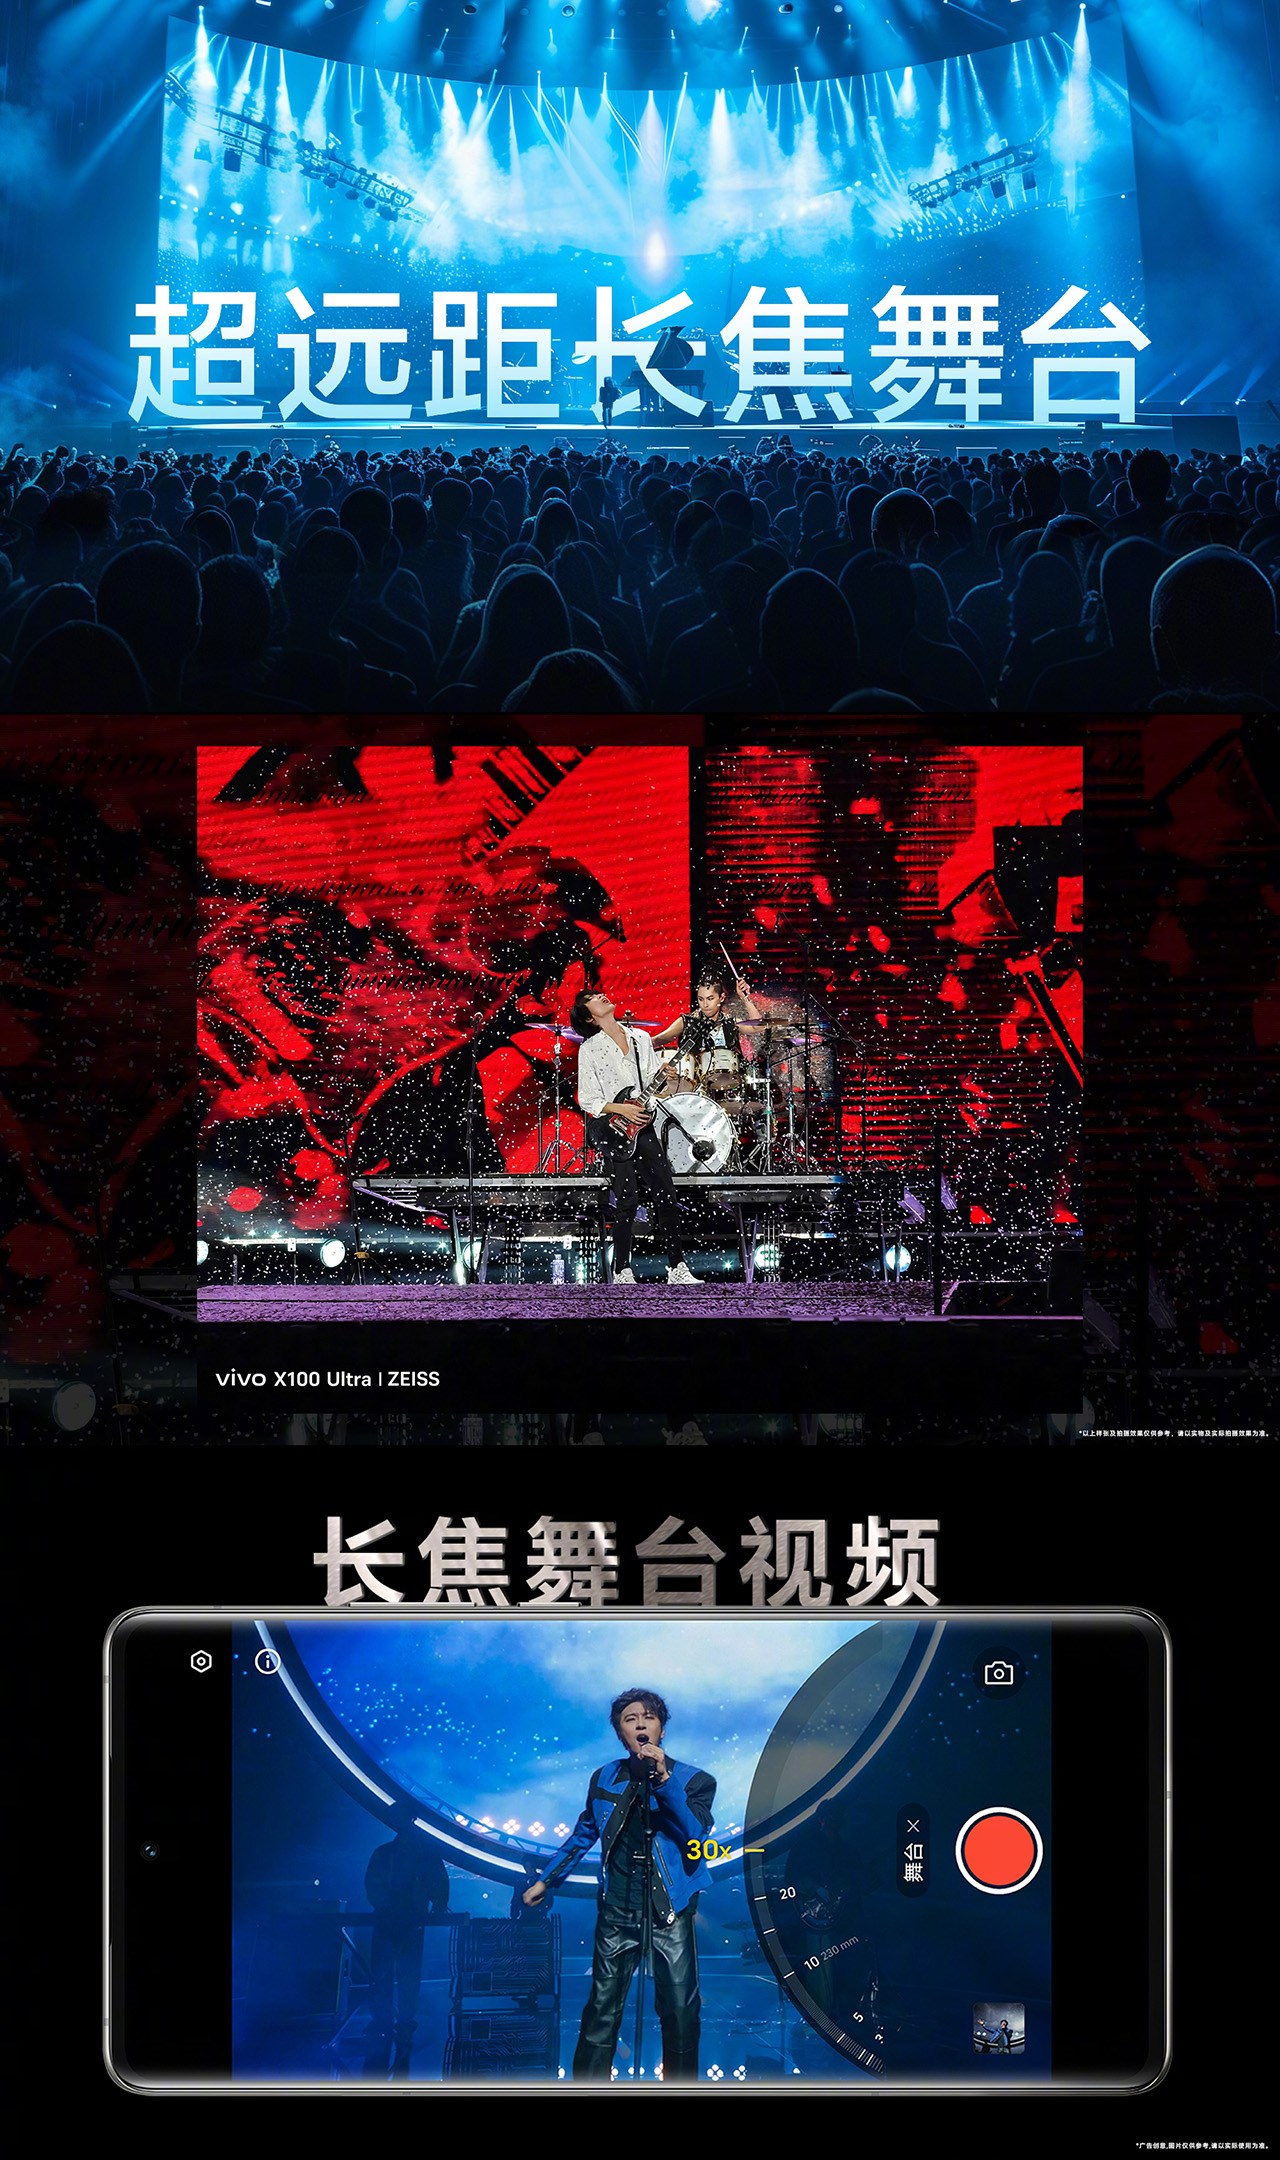 Tính năng Telephoto Concert trên Vivo X100 Ultra giúp ghi lại những khoảnh khắc tại buổi hòa nhạc